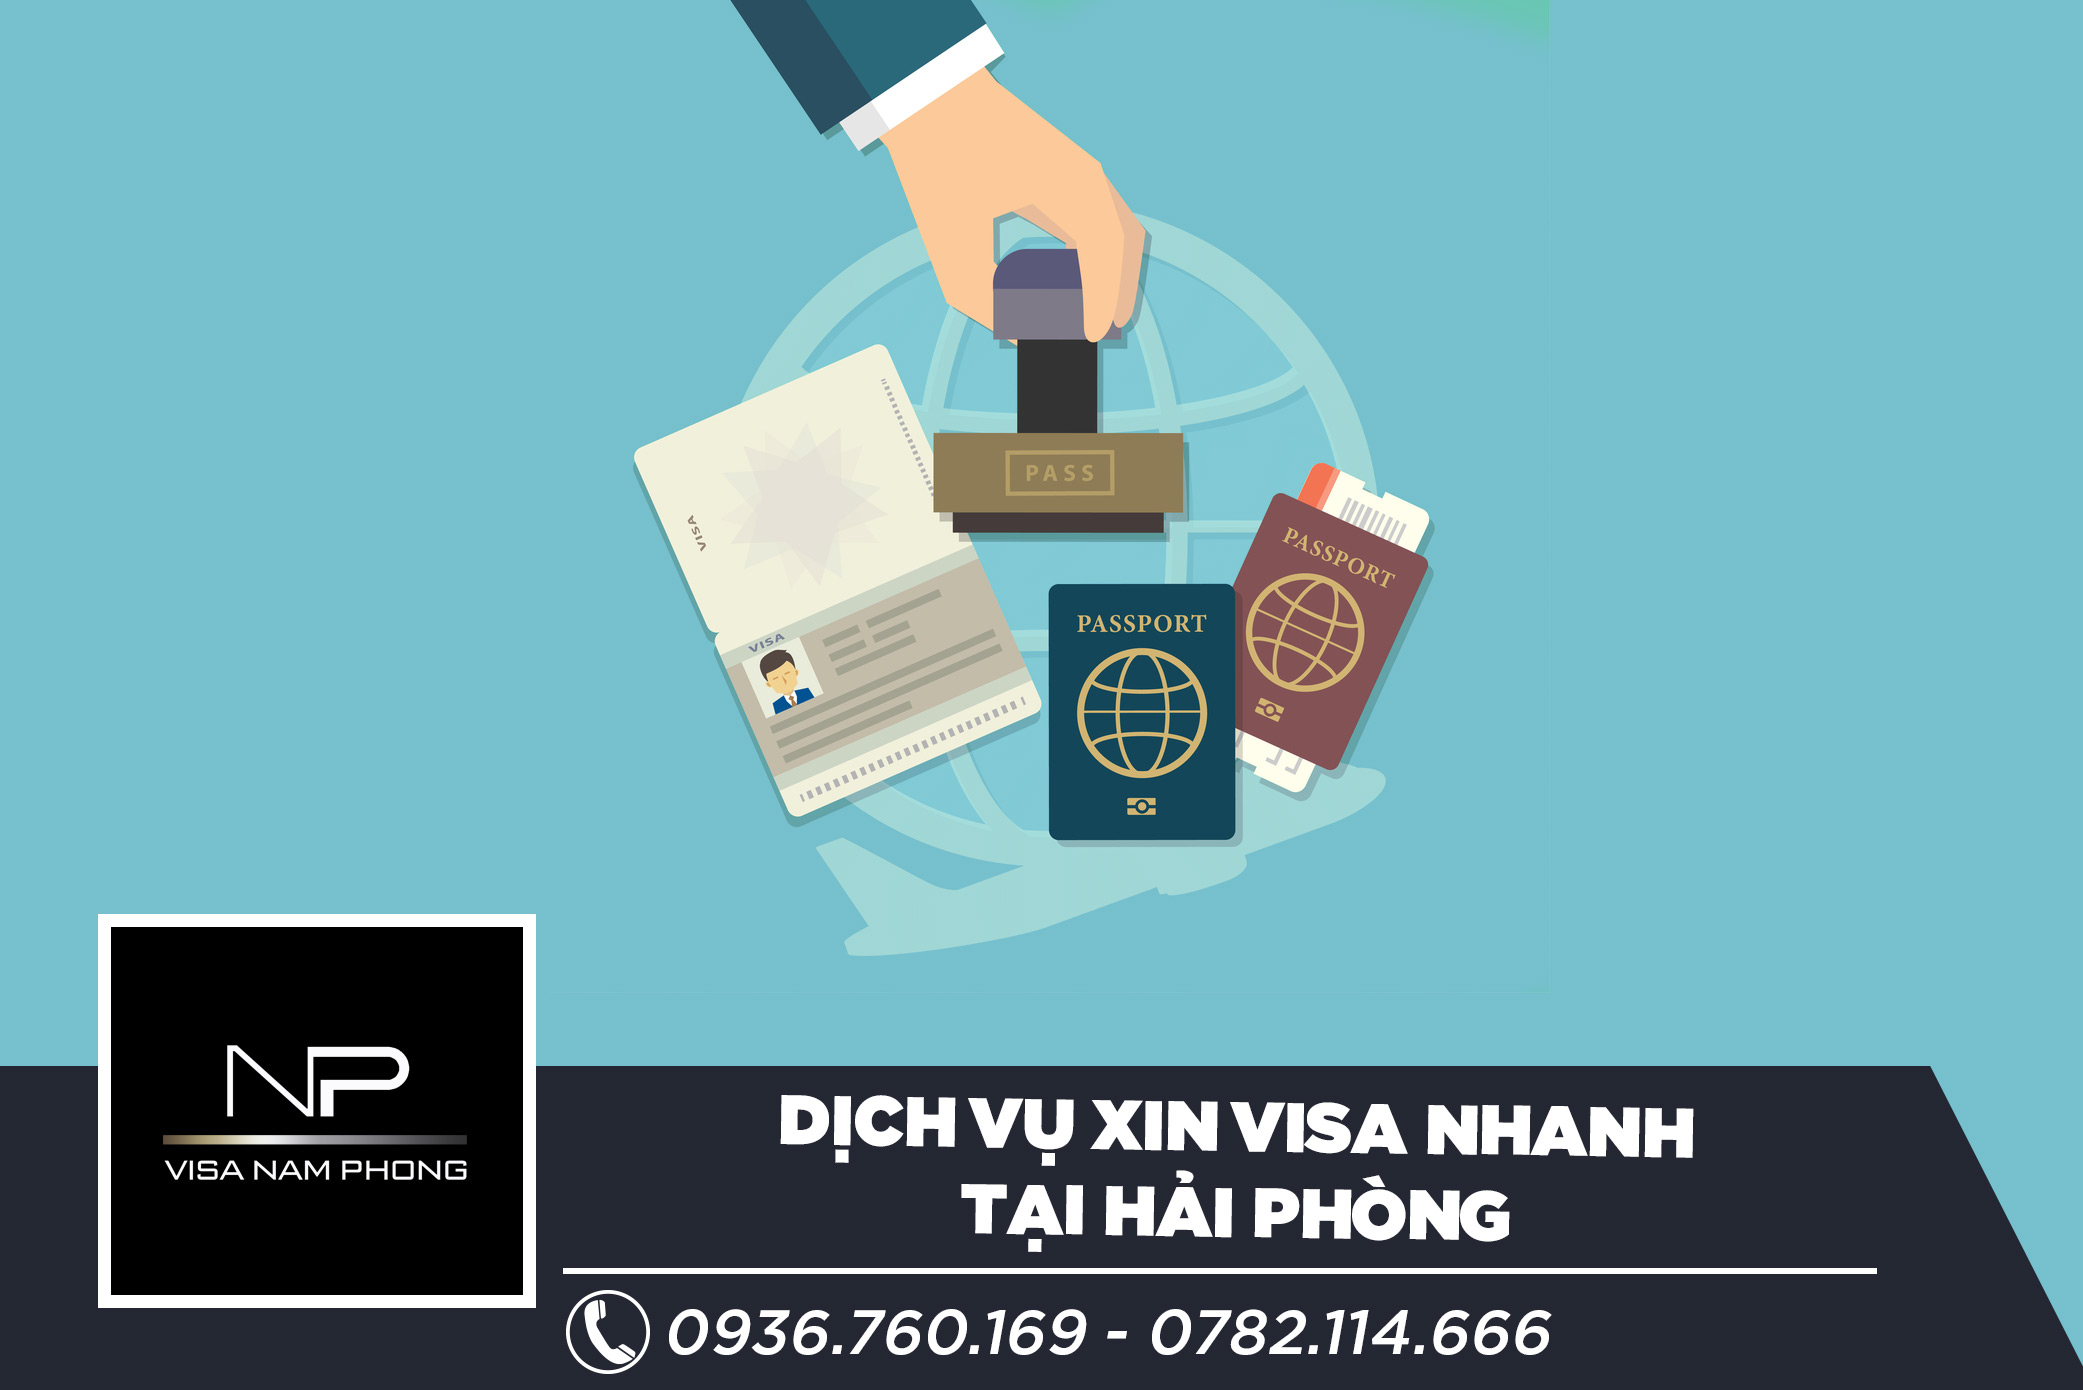 Dịch vụ xin visa nhanh tại Hải Phòng